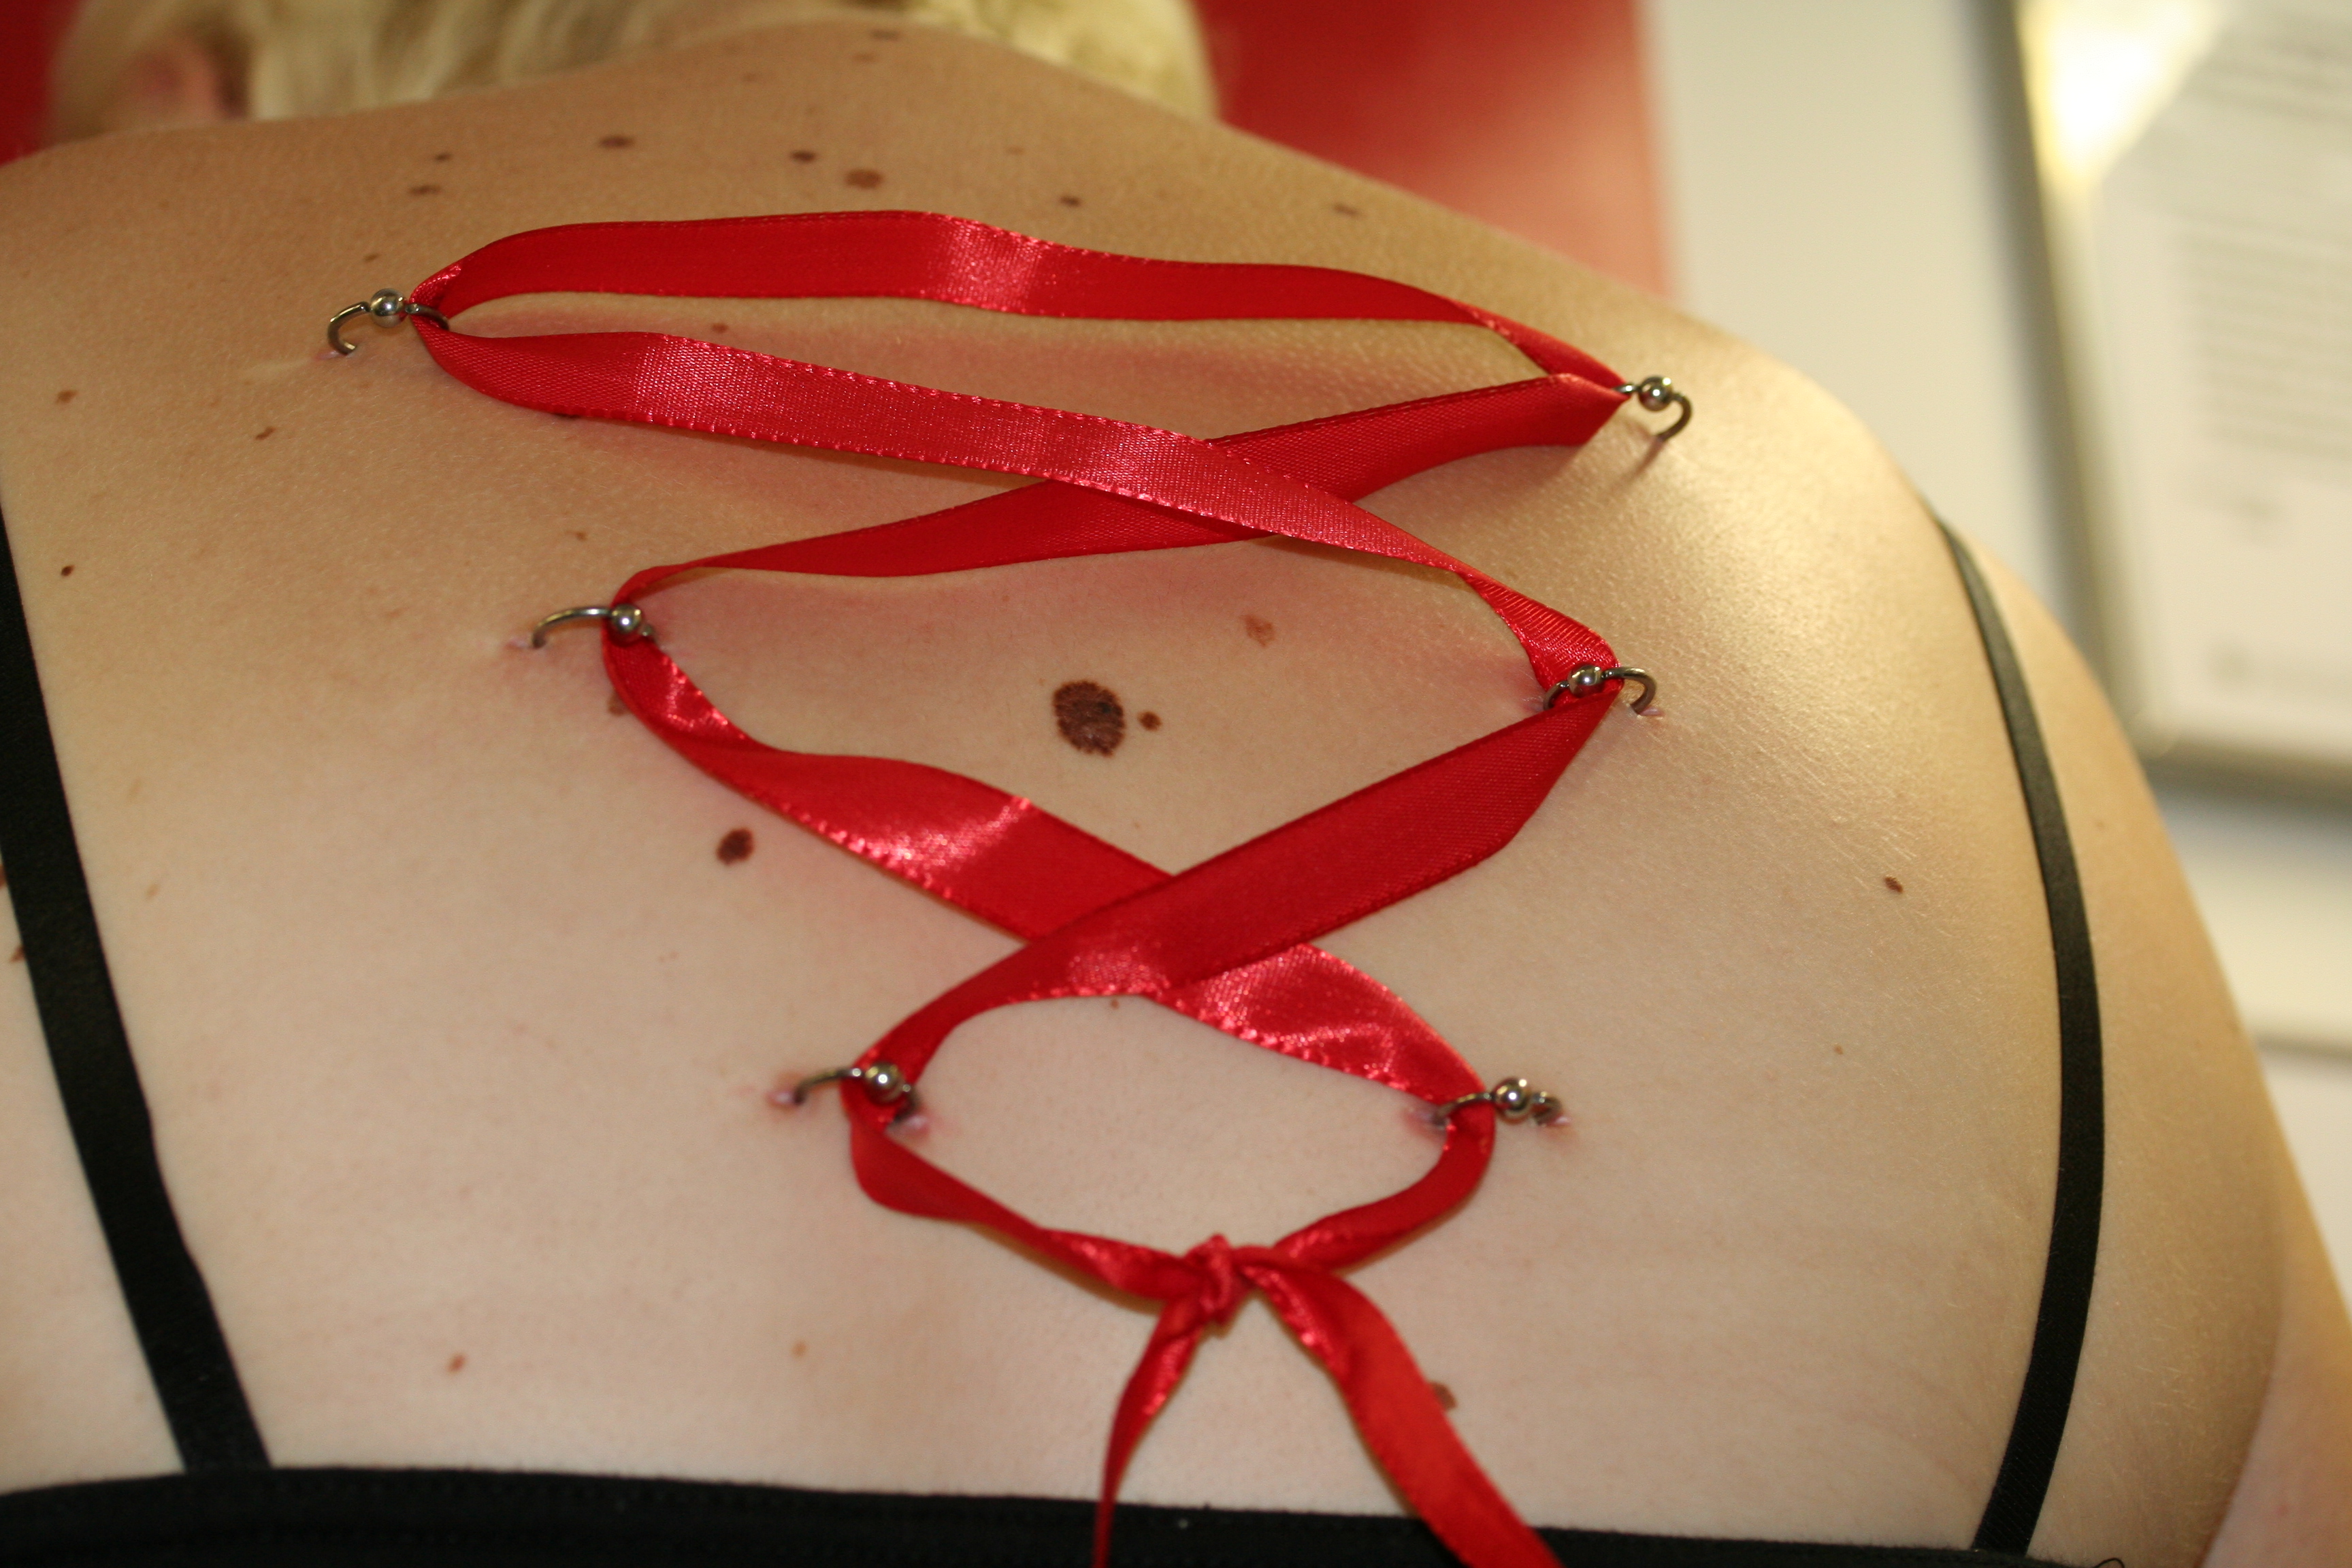 Korsett-Piercing am Rücken mit 3 BCR Ringen und rotem Band